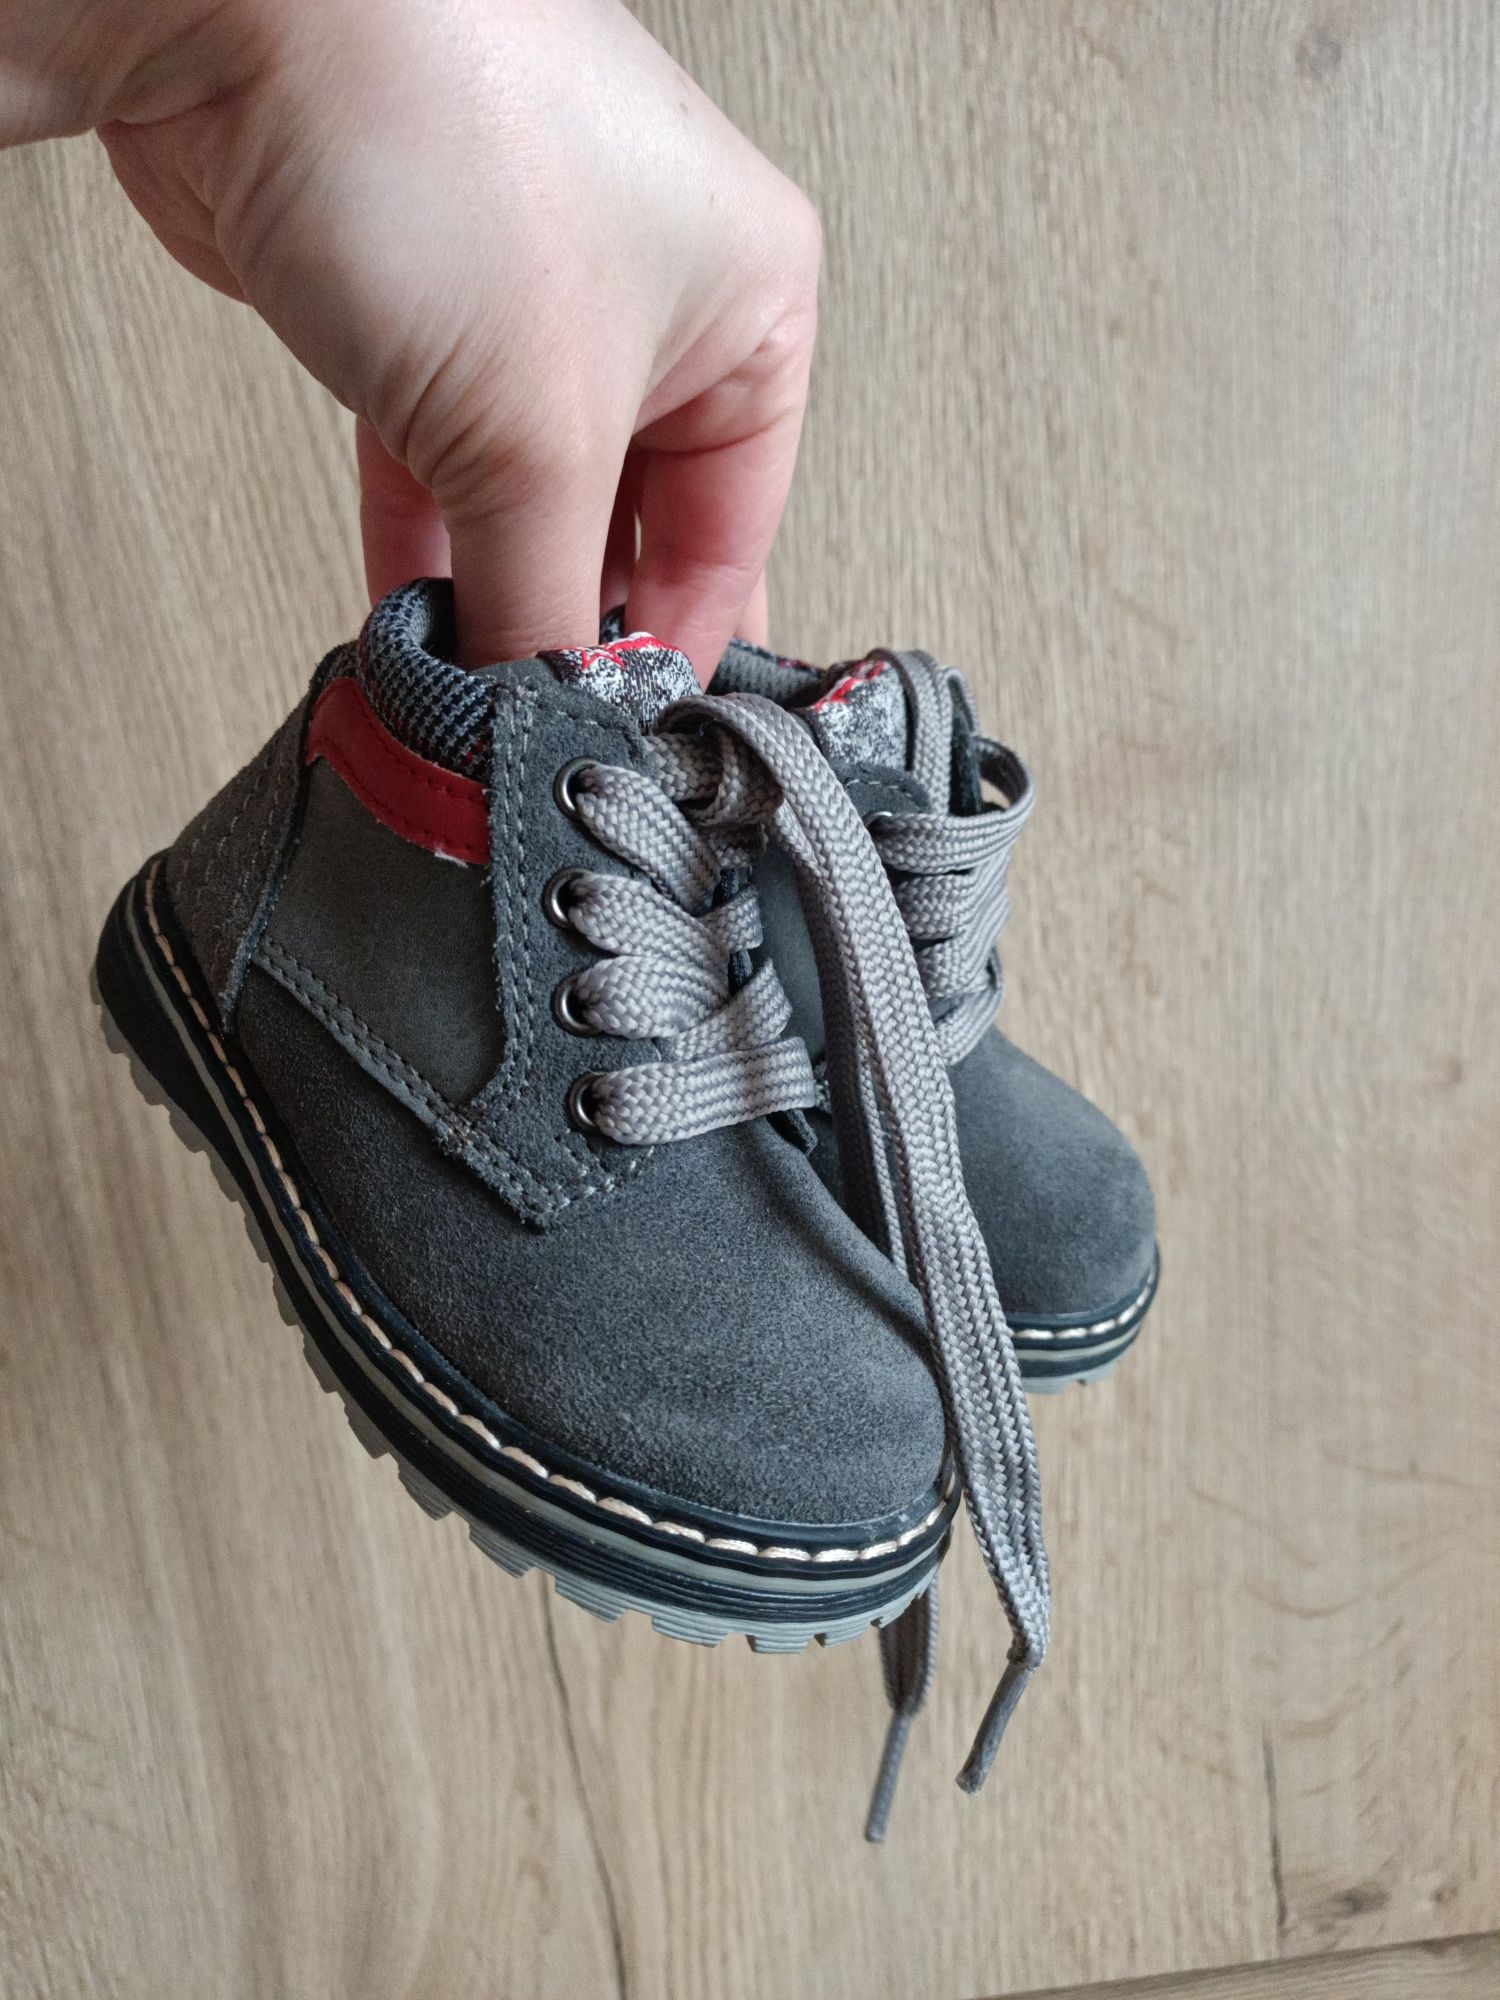 Новые ботинки сапожки на мальчика или девочку